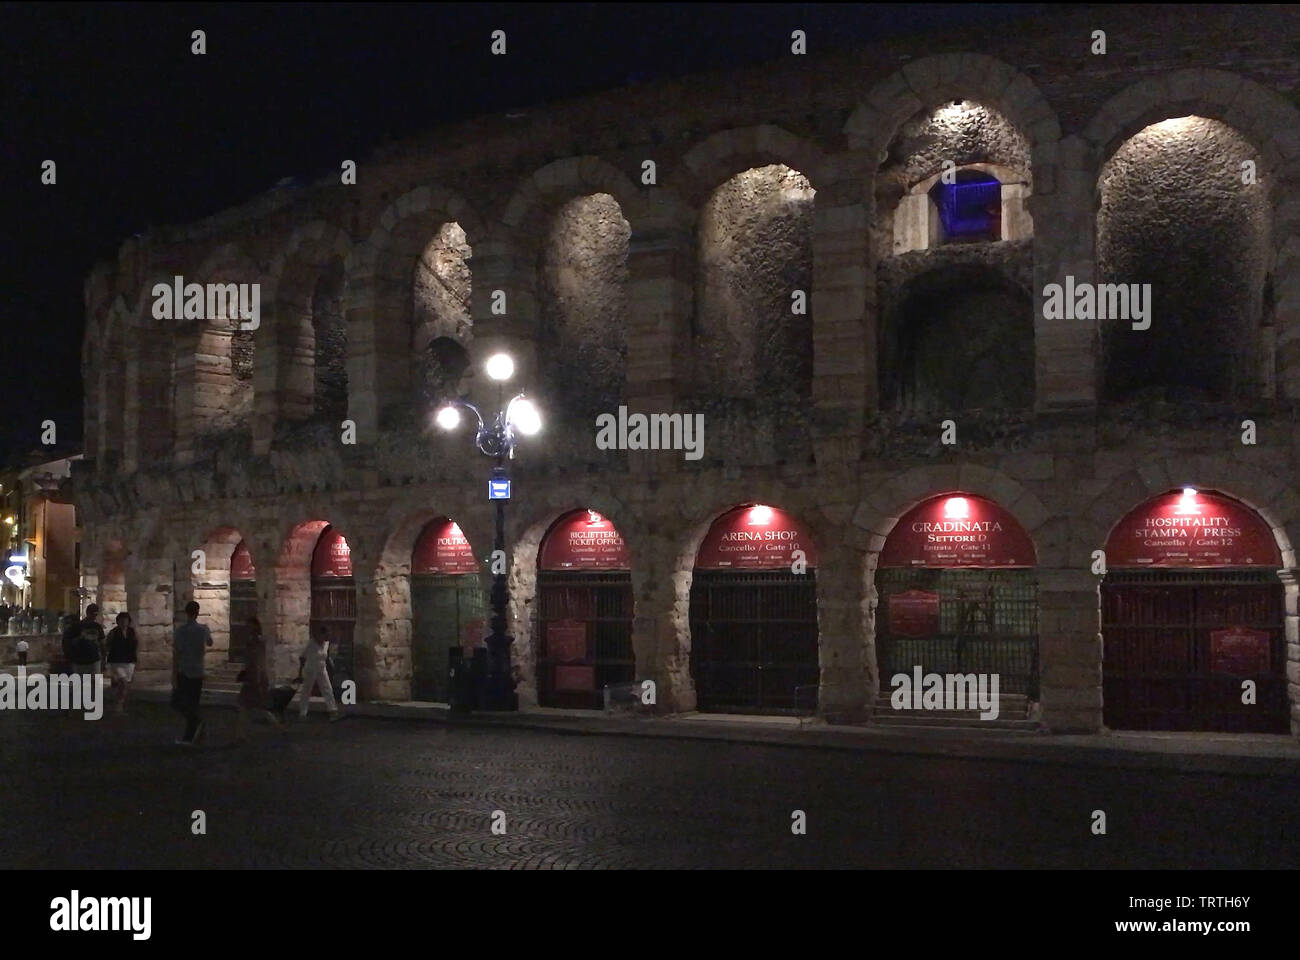 Römischen Amphitheater Arena di Verona an der Piazza Bra Platz im historischen Zentrum von Verona - Italien. Stockfoto